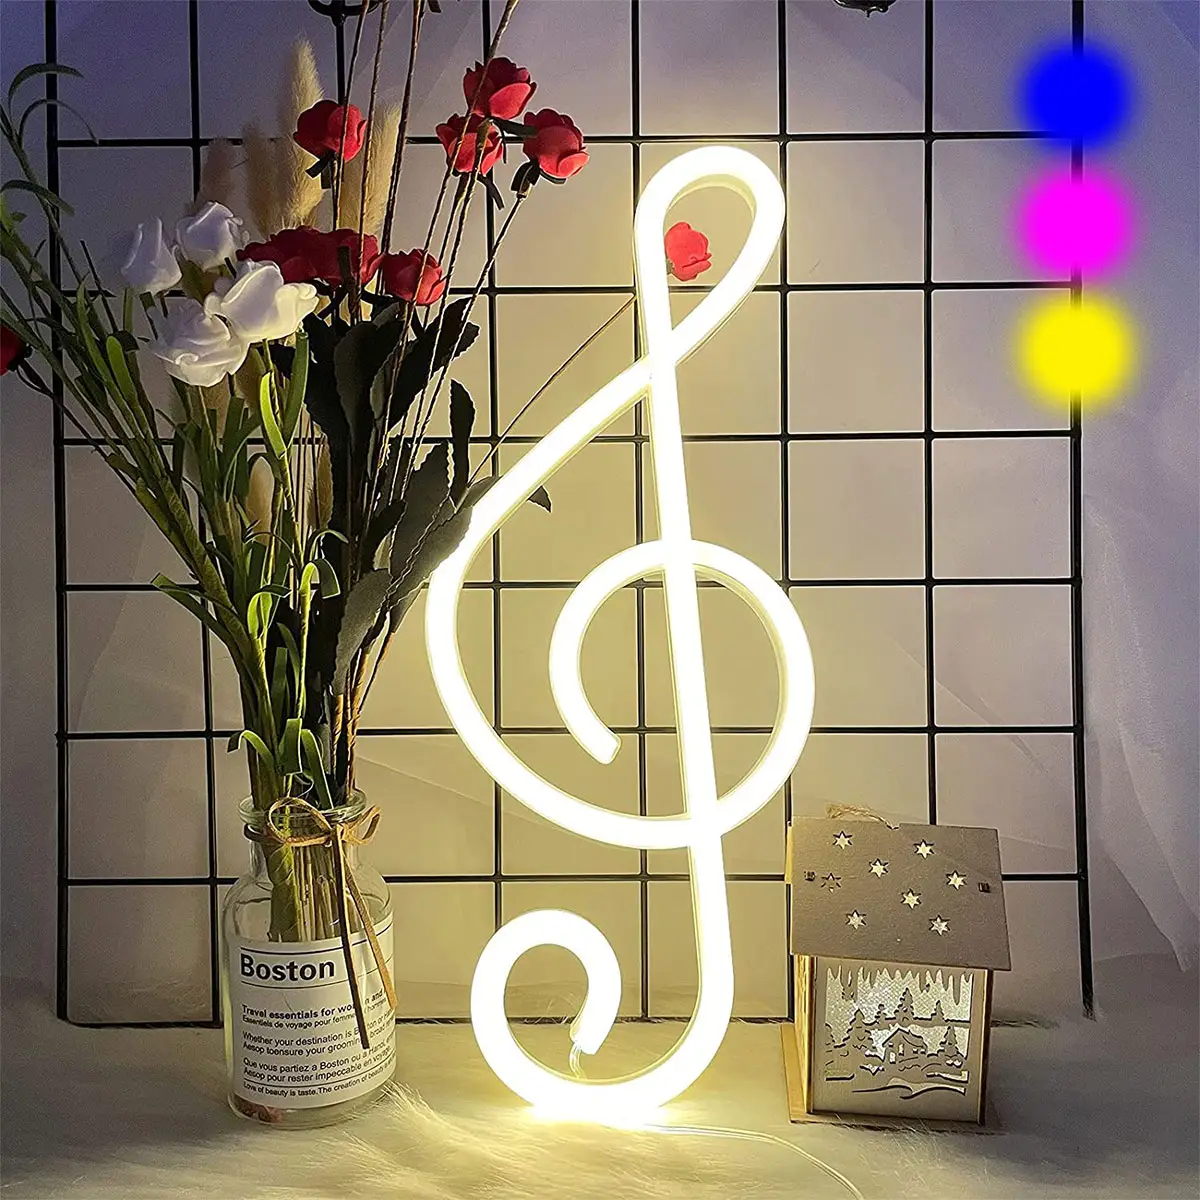 음악 노트 야간 램프 LED 네온 라이트 콘서트 벽 램프 배터리/USB 전원 다채로운 네온 램프 바 야간 조명 침실 장식